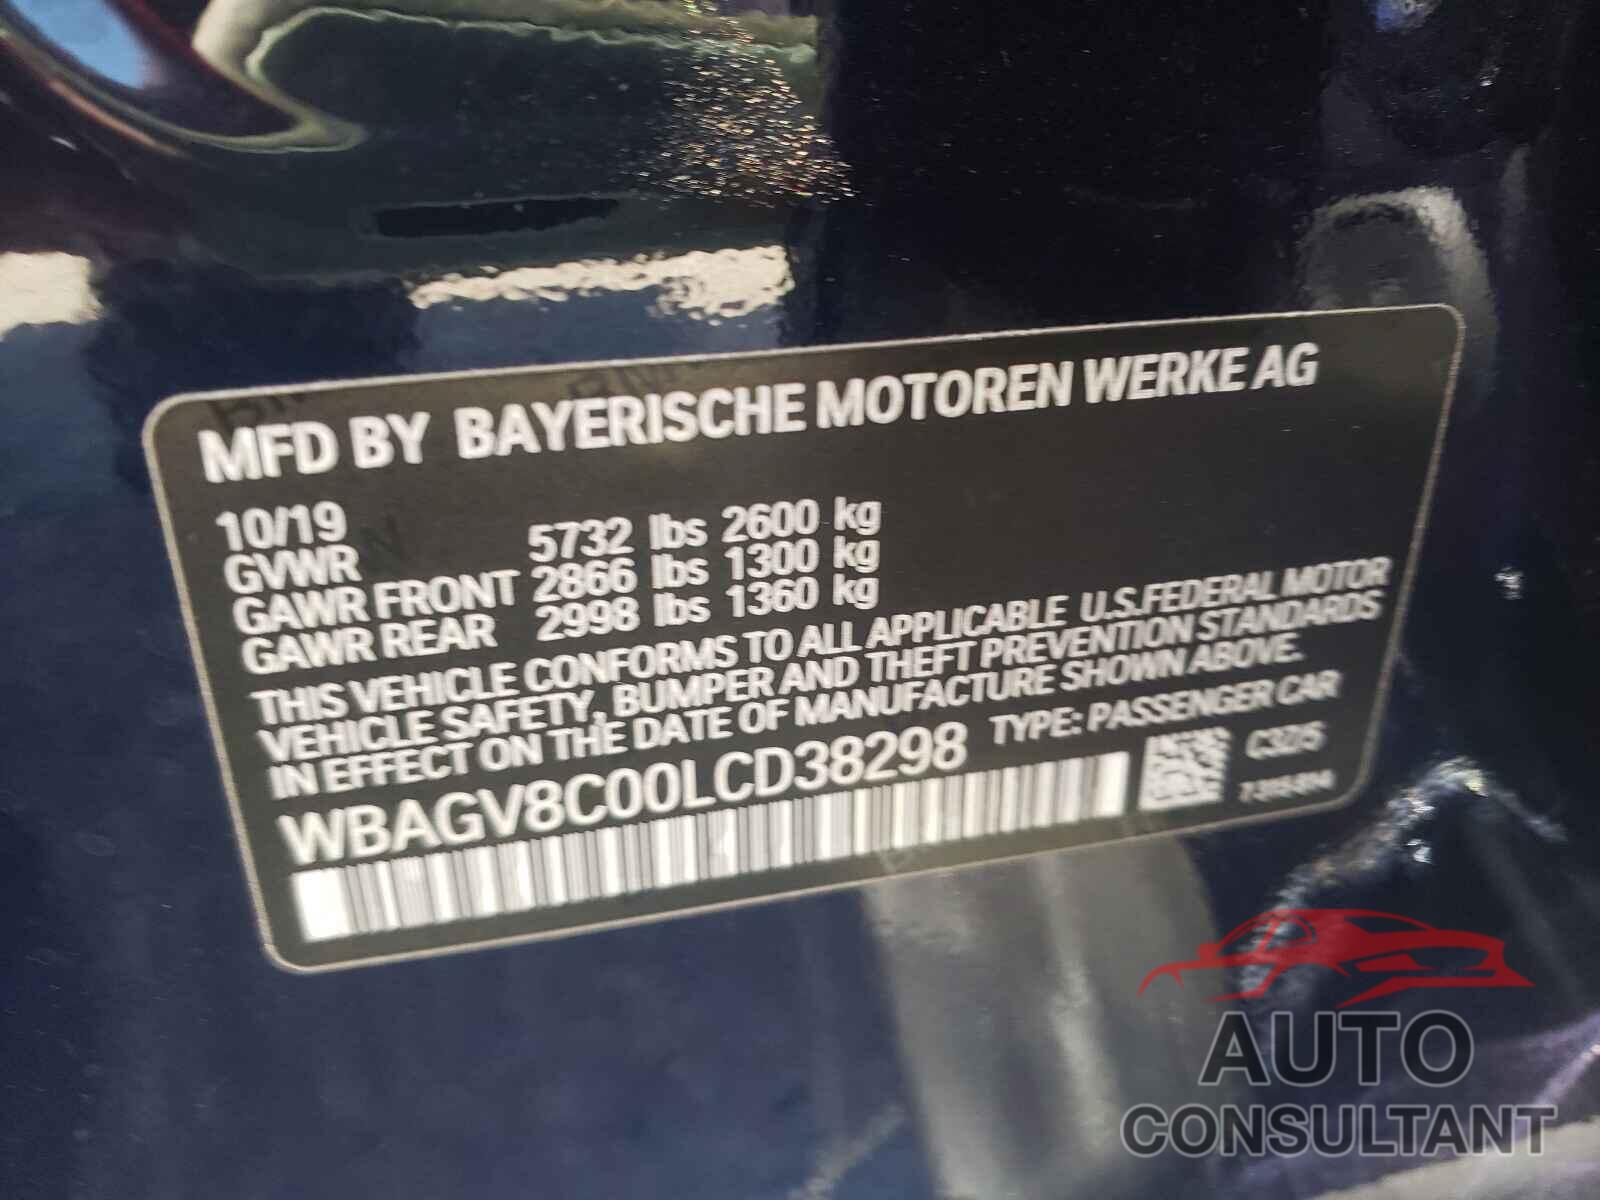 BMW M8 2020 - WBAGV8C00LCD38298